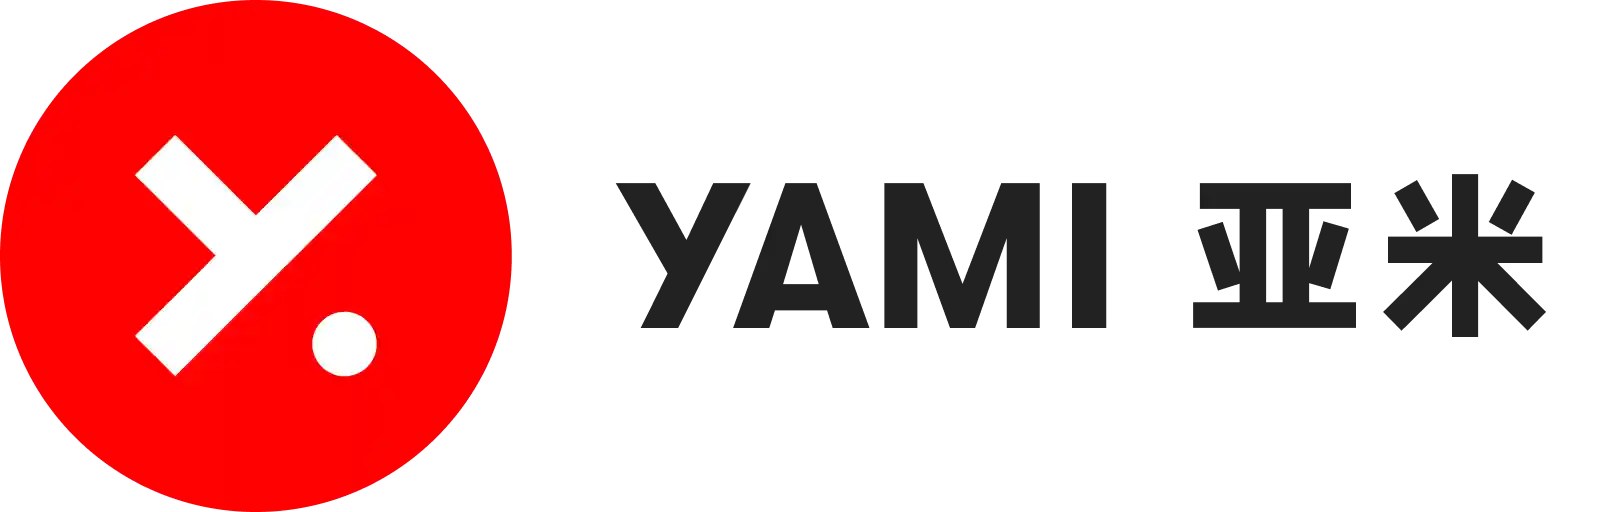 Yami 프로모션 